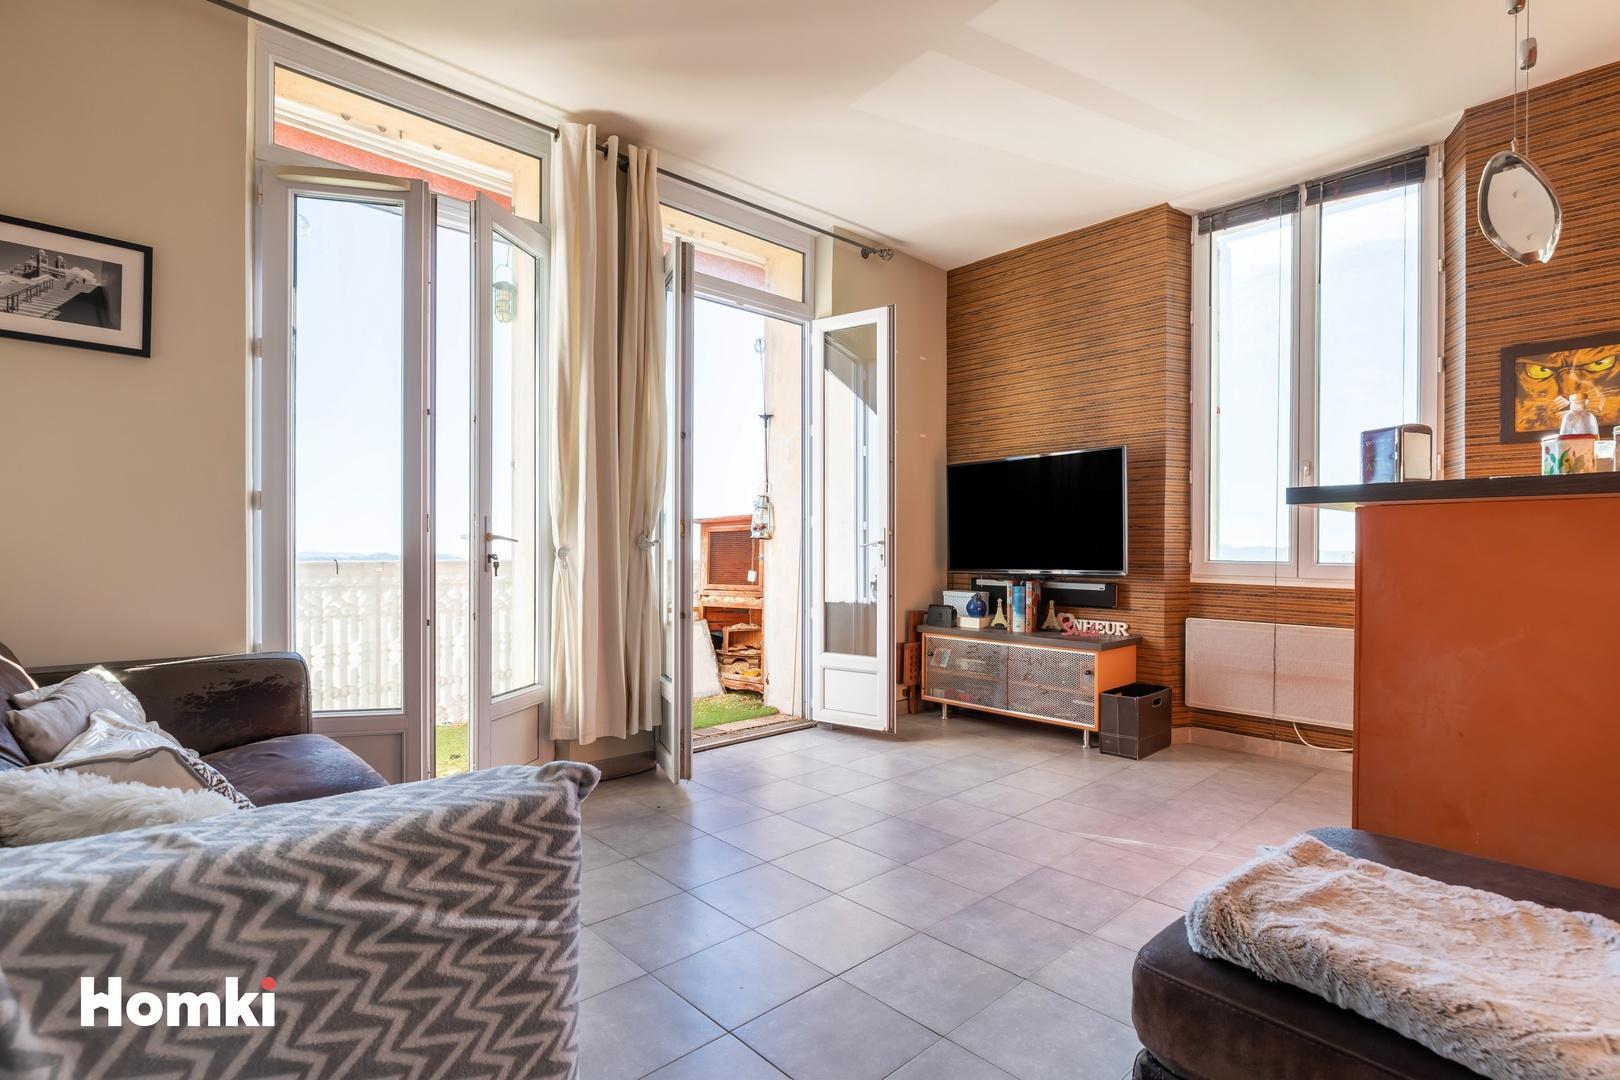 Homki - Vente Appartement  de 94.0 m² à Grasse 06520